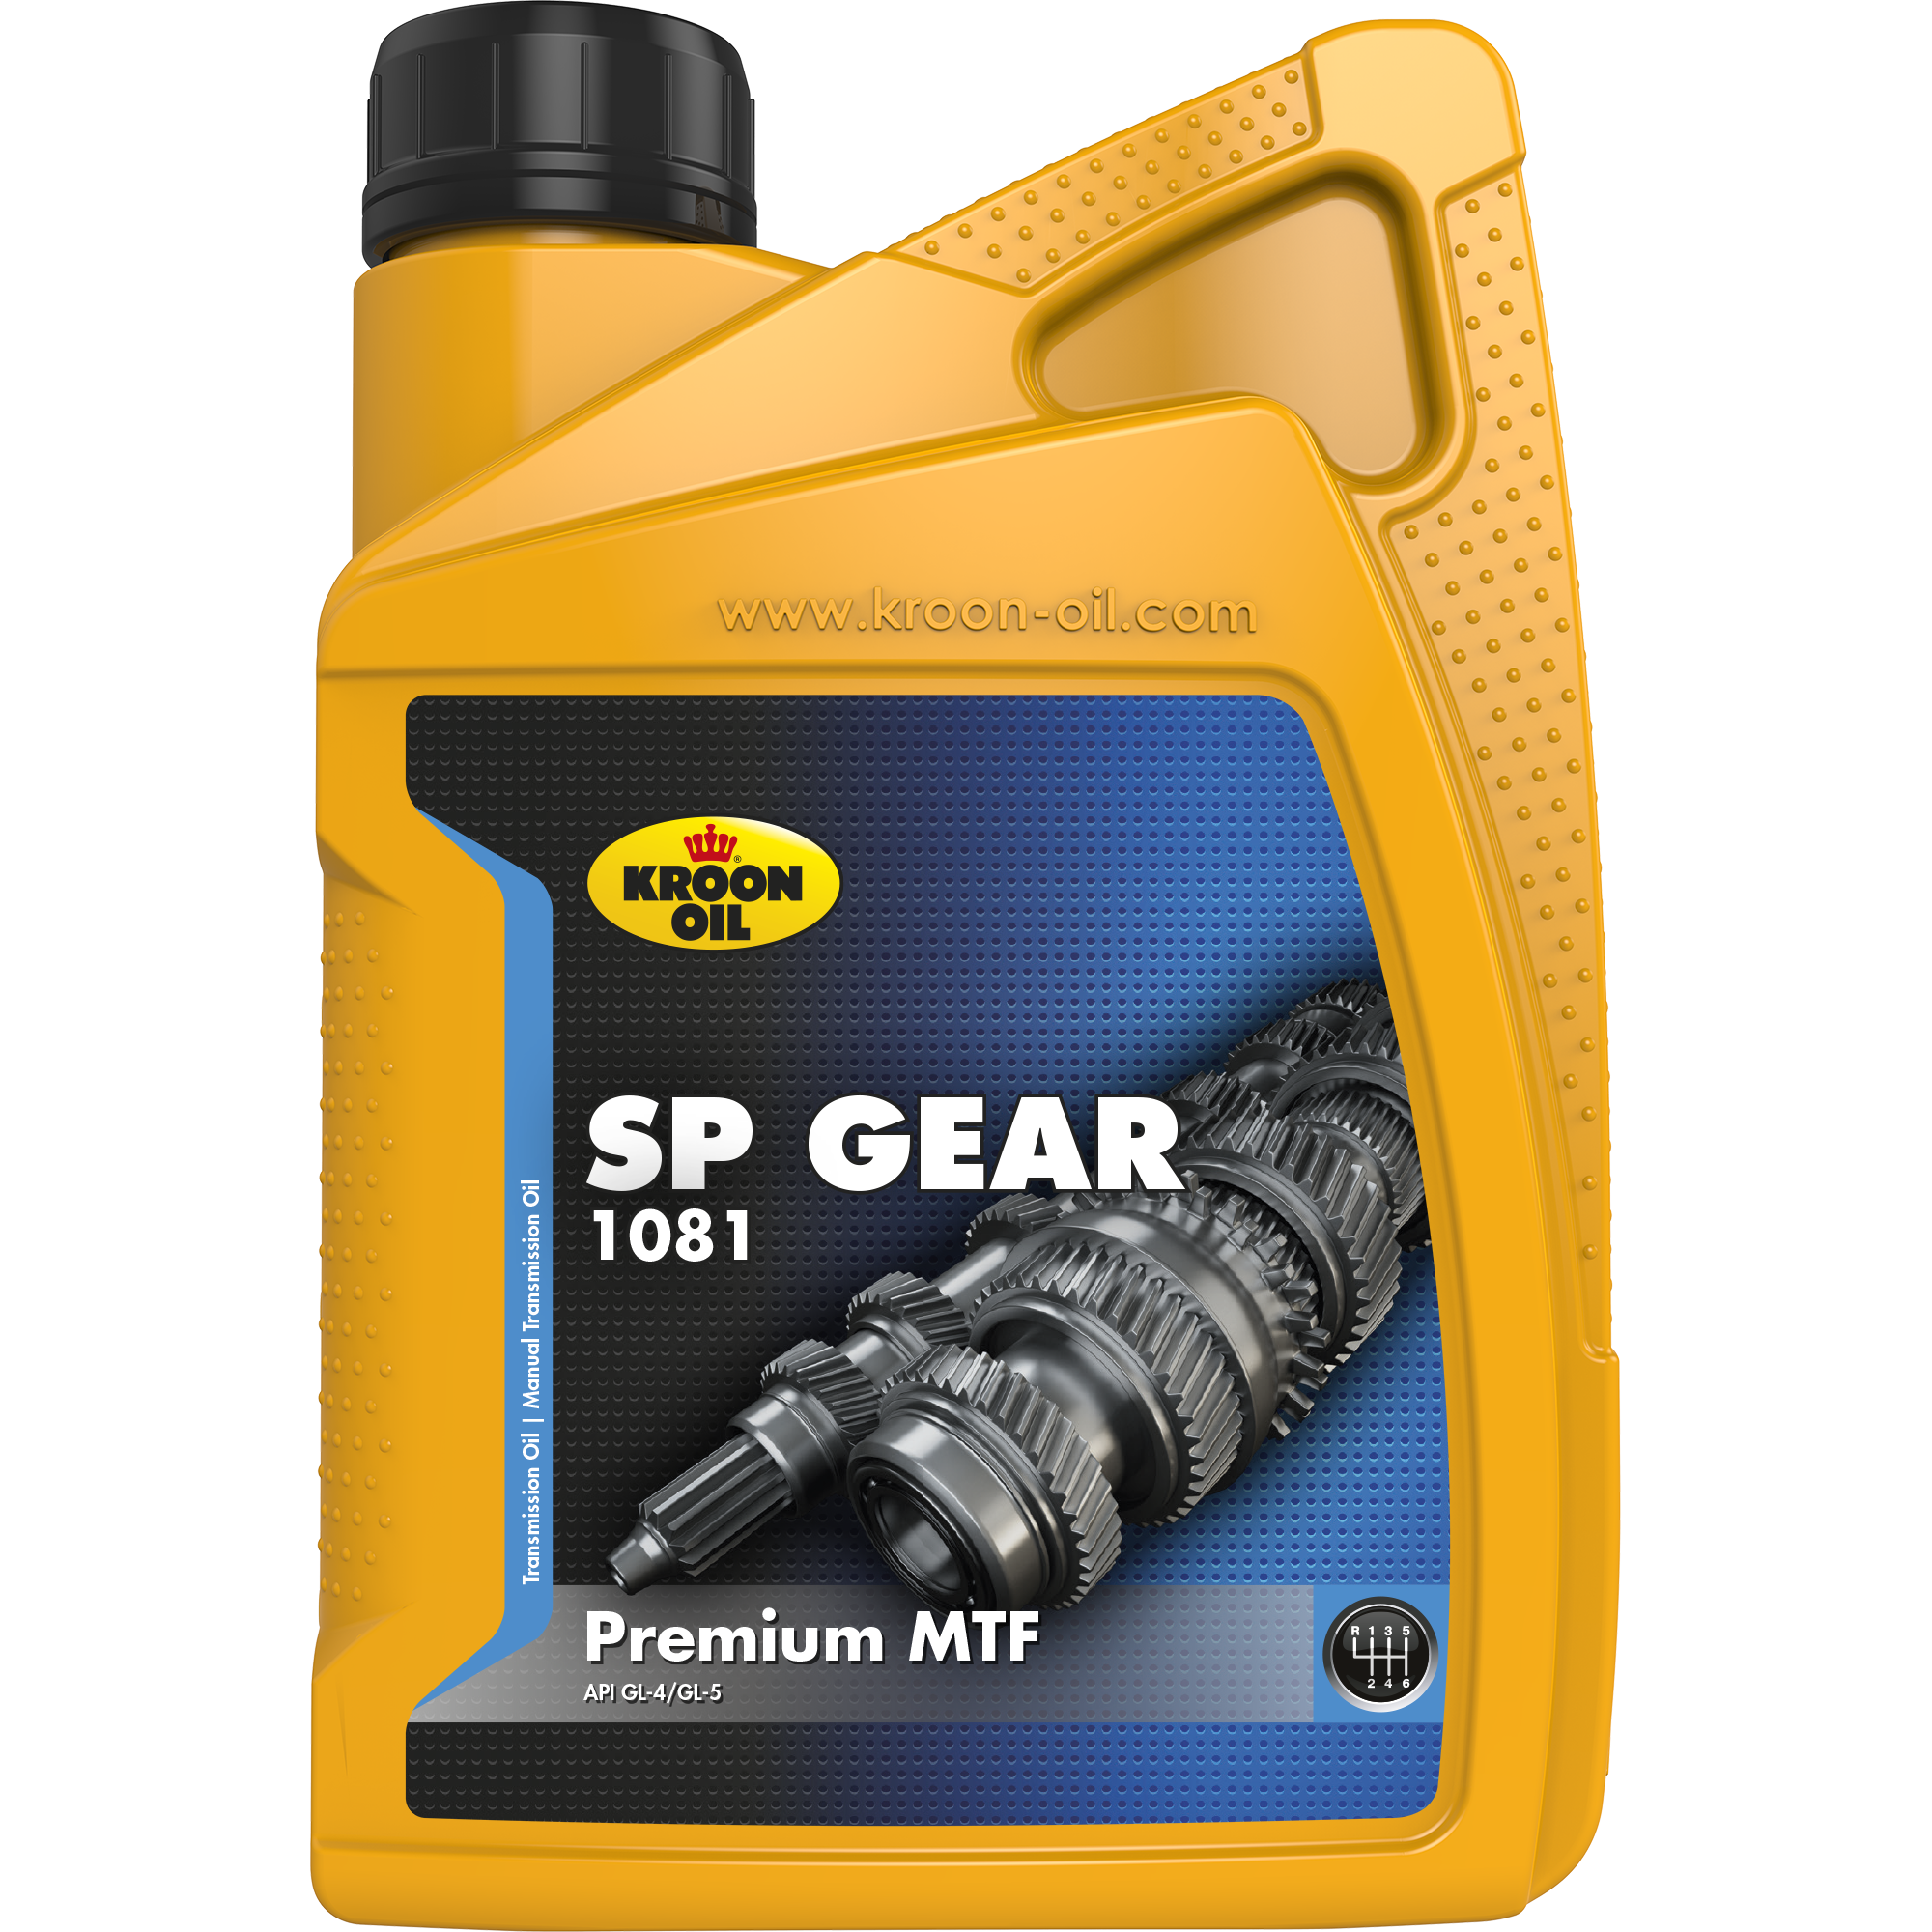 33950-1 SP Gear 1081 is een zeer hoogwaardige brandstofbesparende SAE 75W transmissieolie.